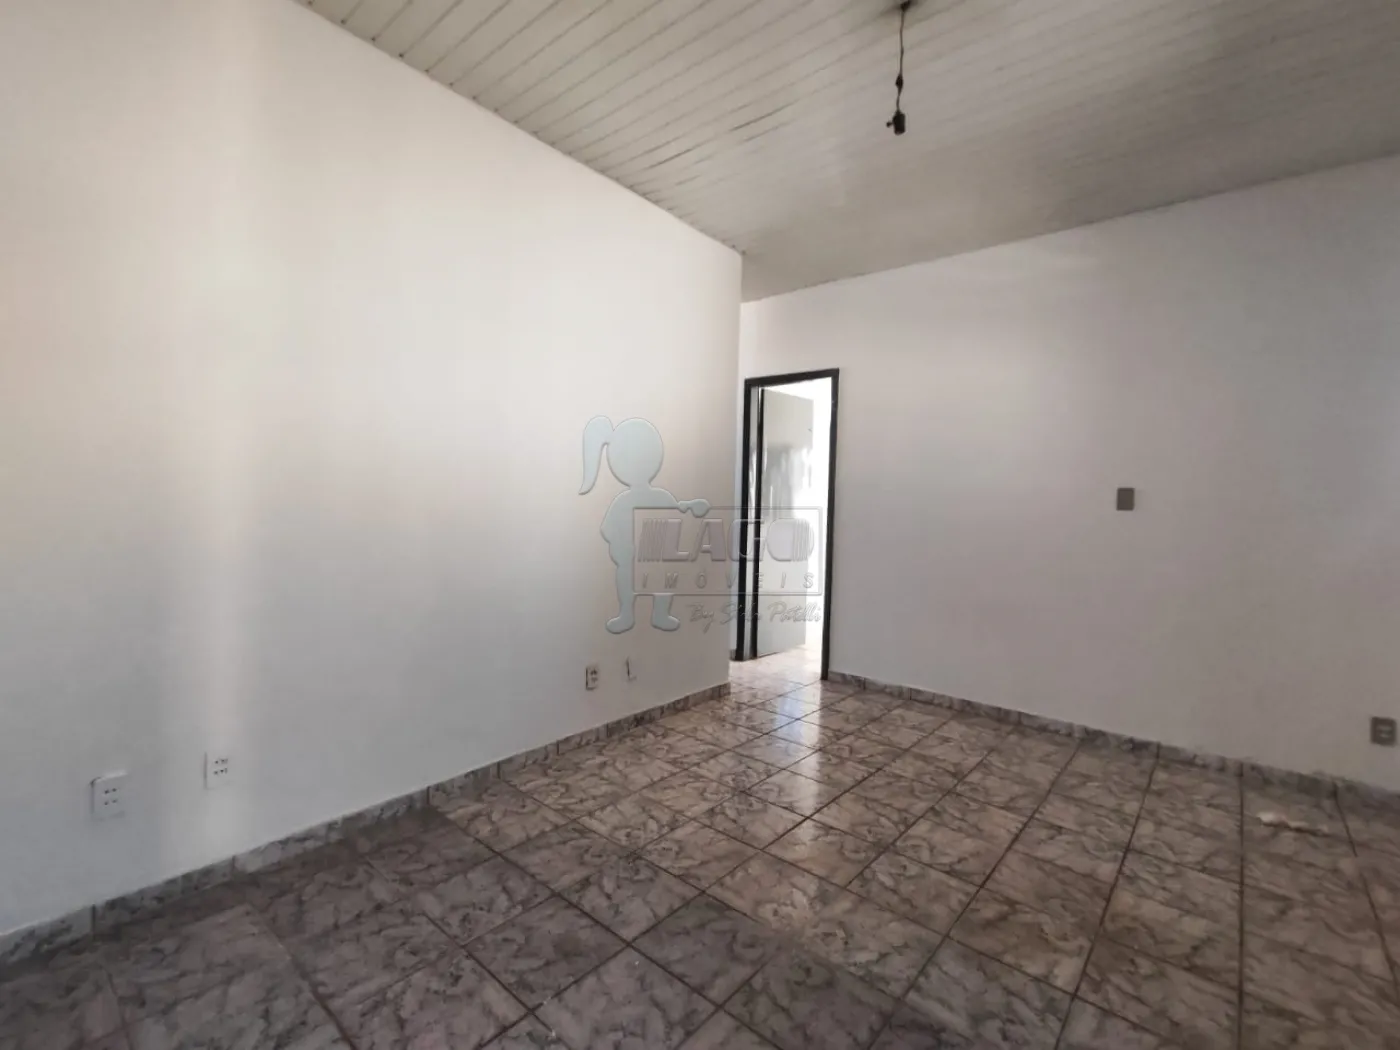 Comprar Casa / Padrão em Ribeirão Preto R$ 250.000,00 - Foto 5